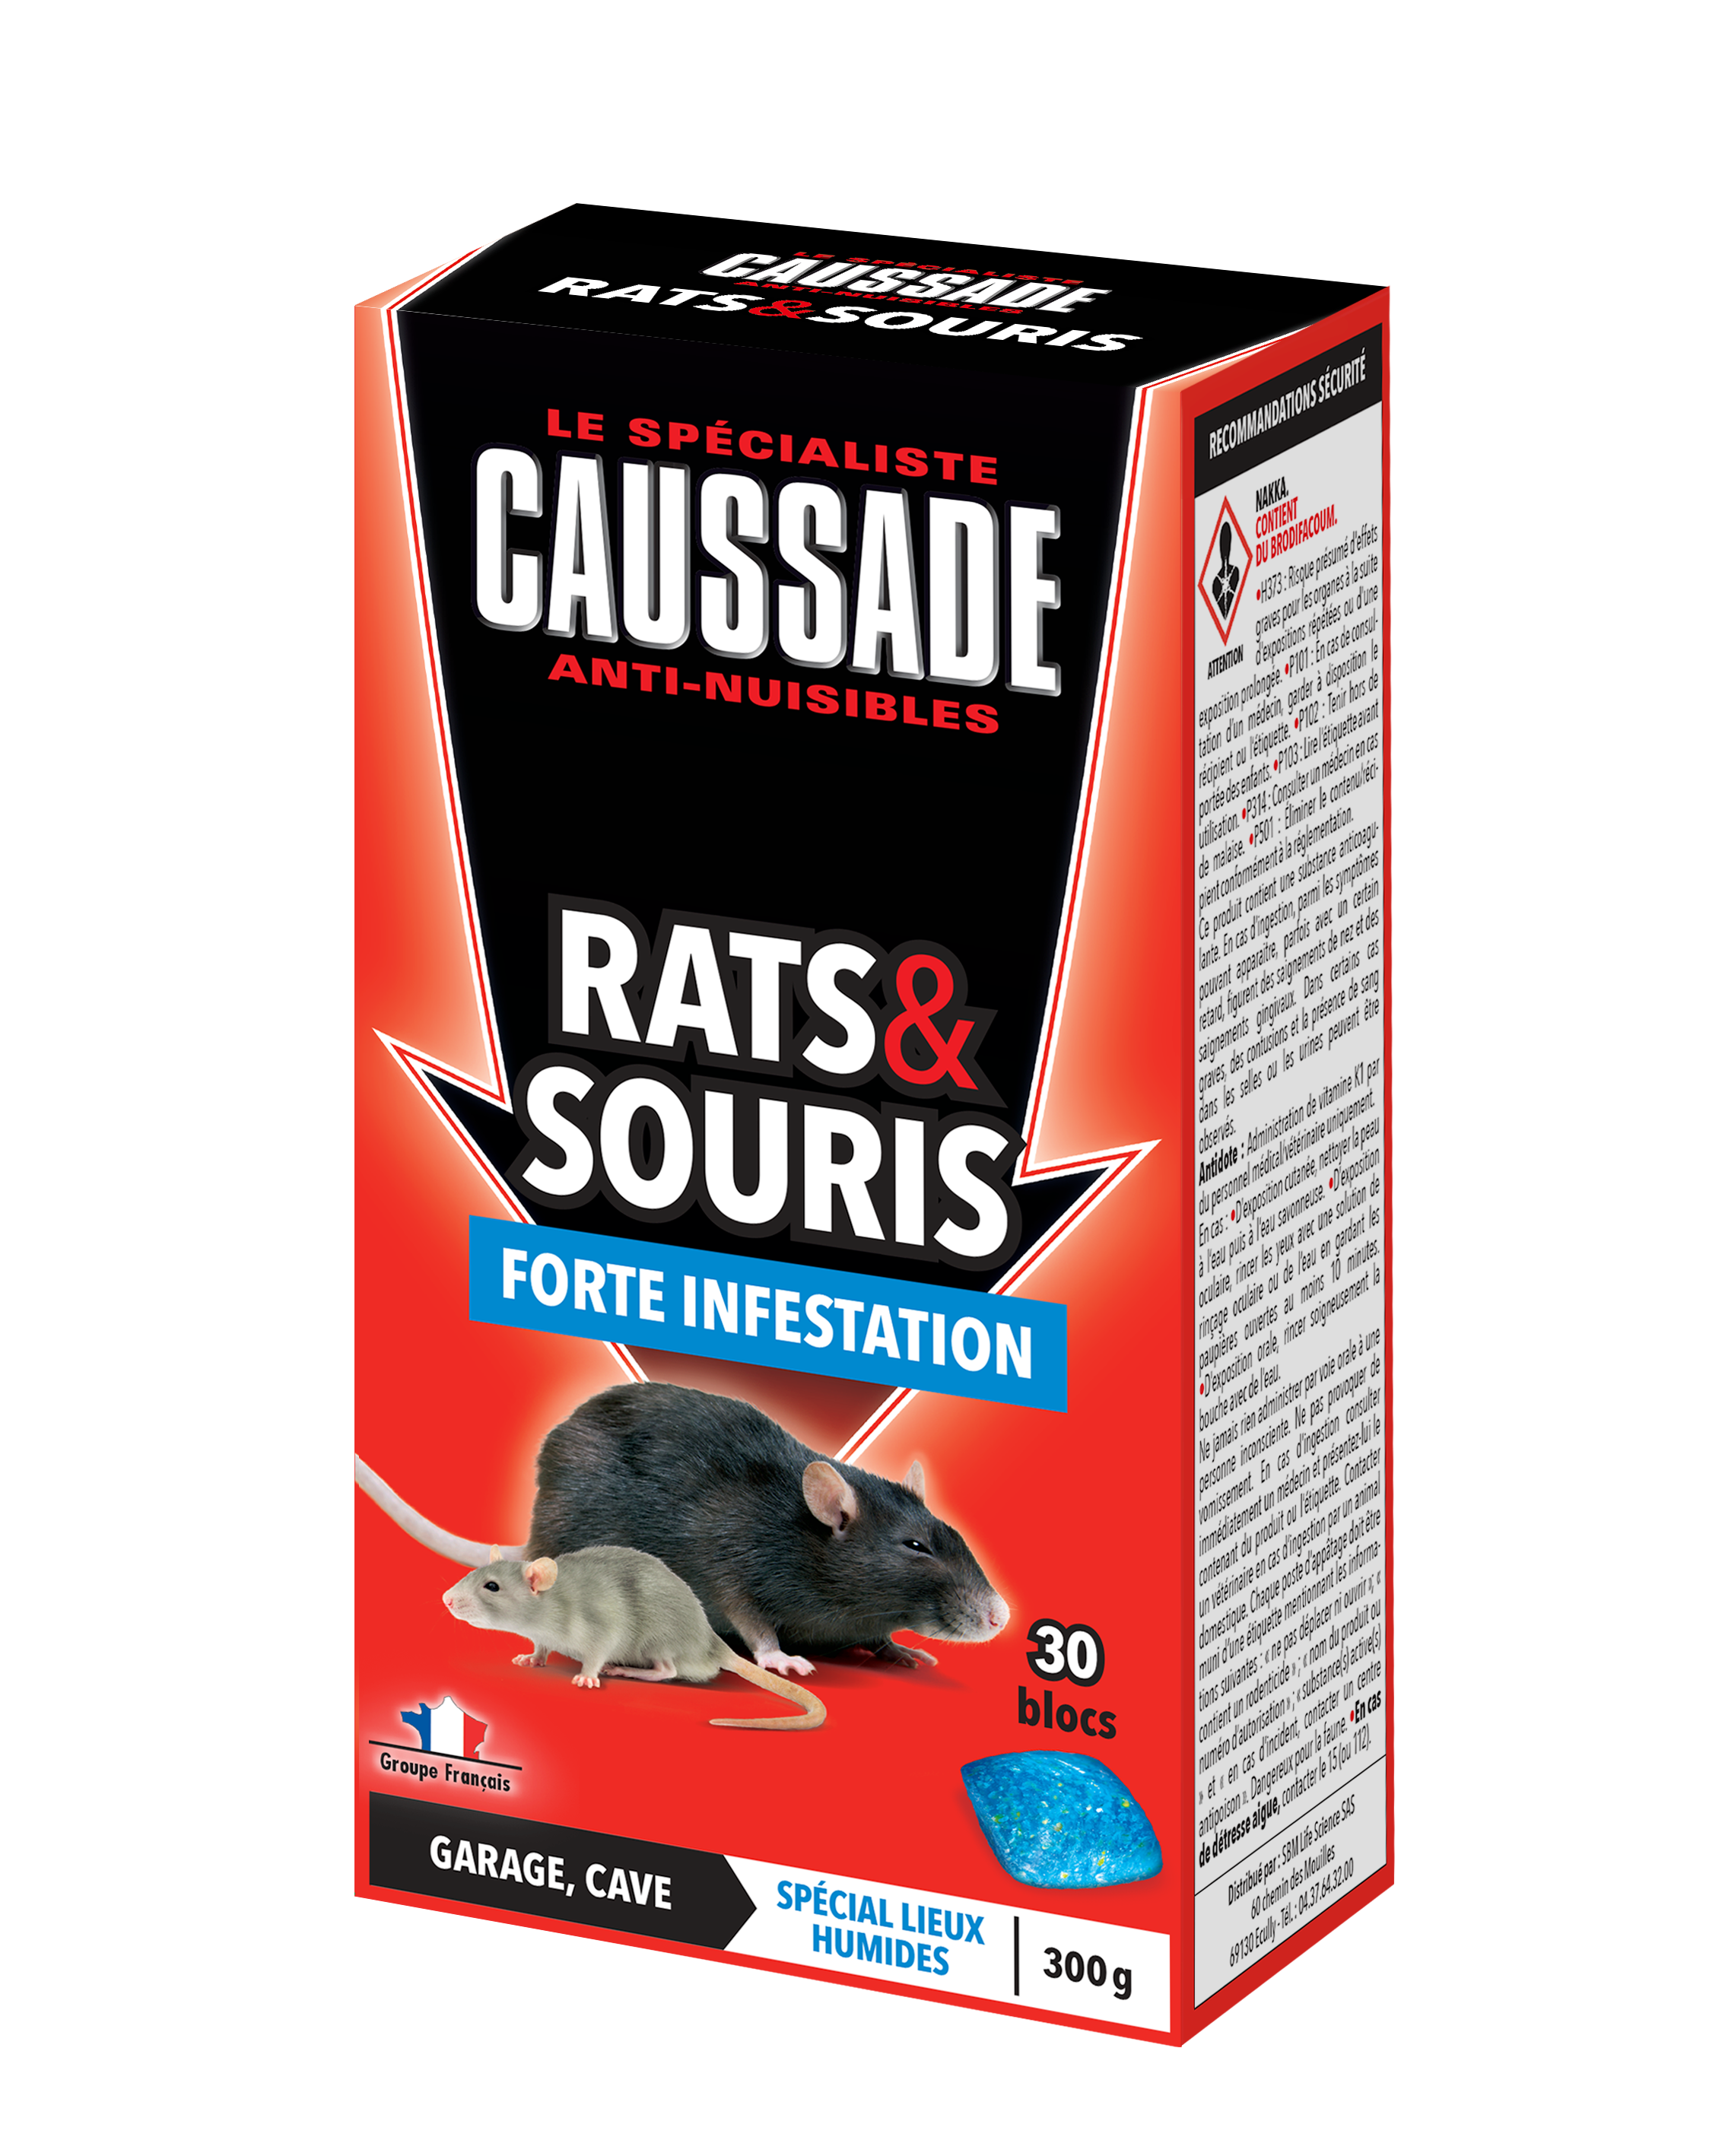 Les rats noirs ou rats des greniers - Chartres Nuisibles